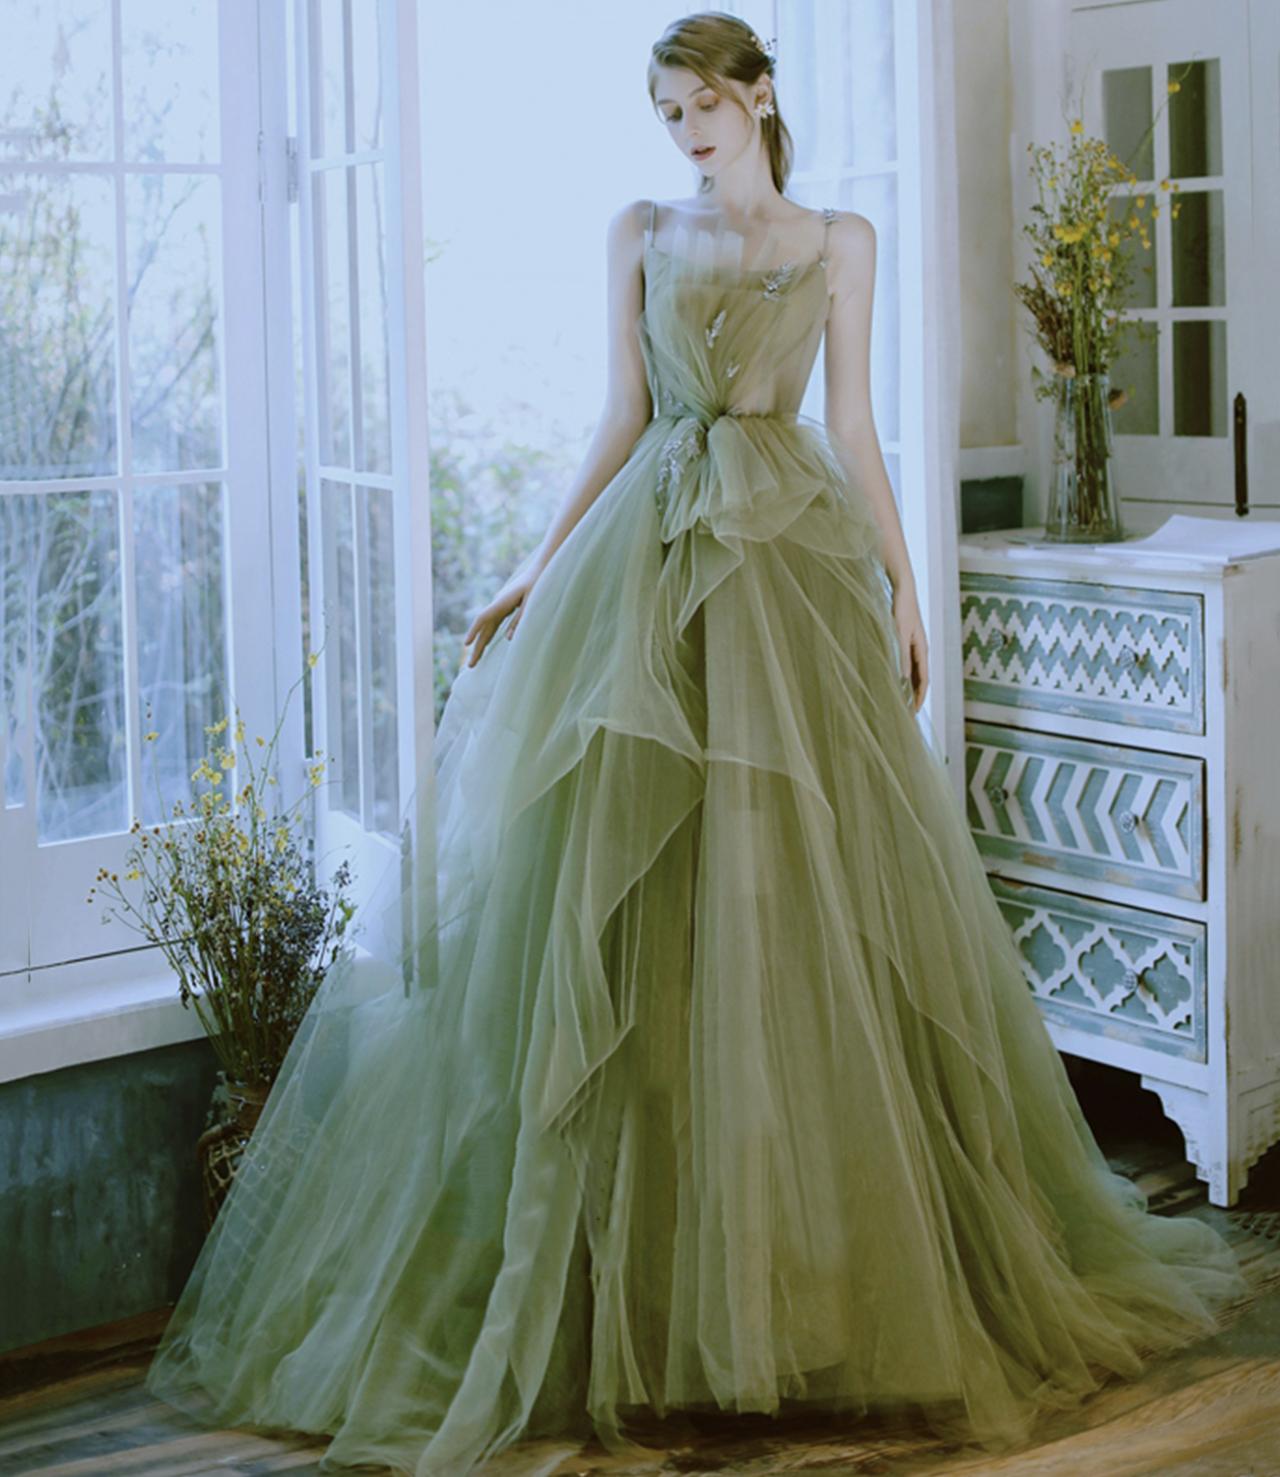 Green Long Ball Gown Dress Evening Dress Formal Gown